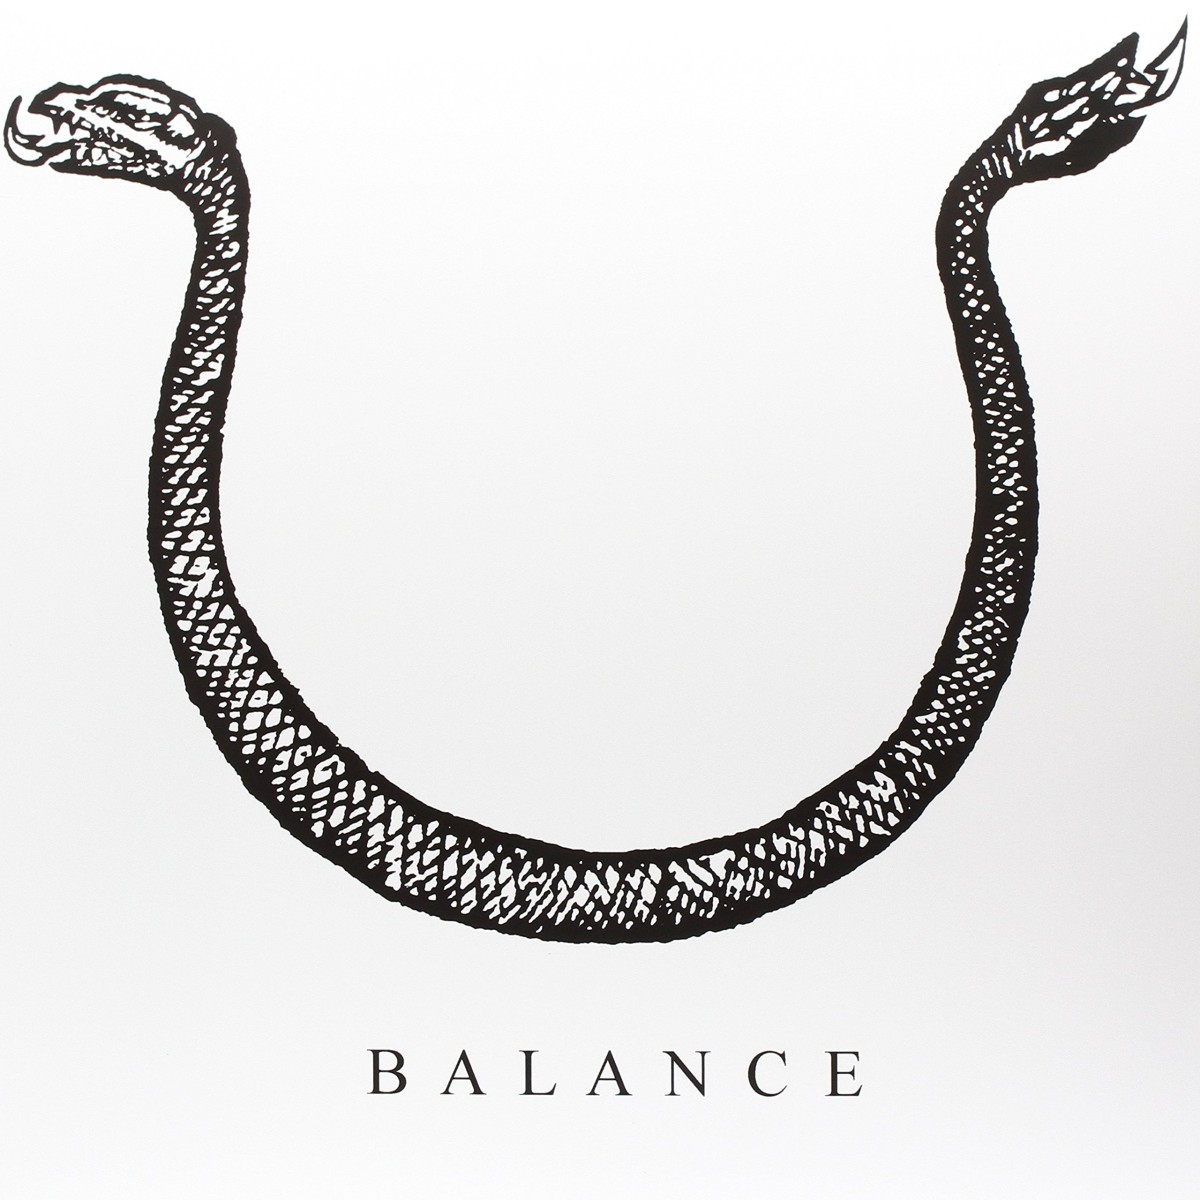 Balance - 3